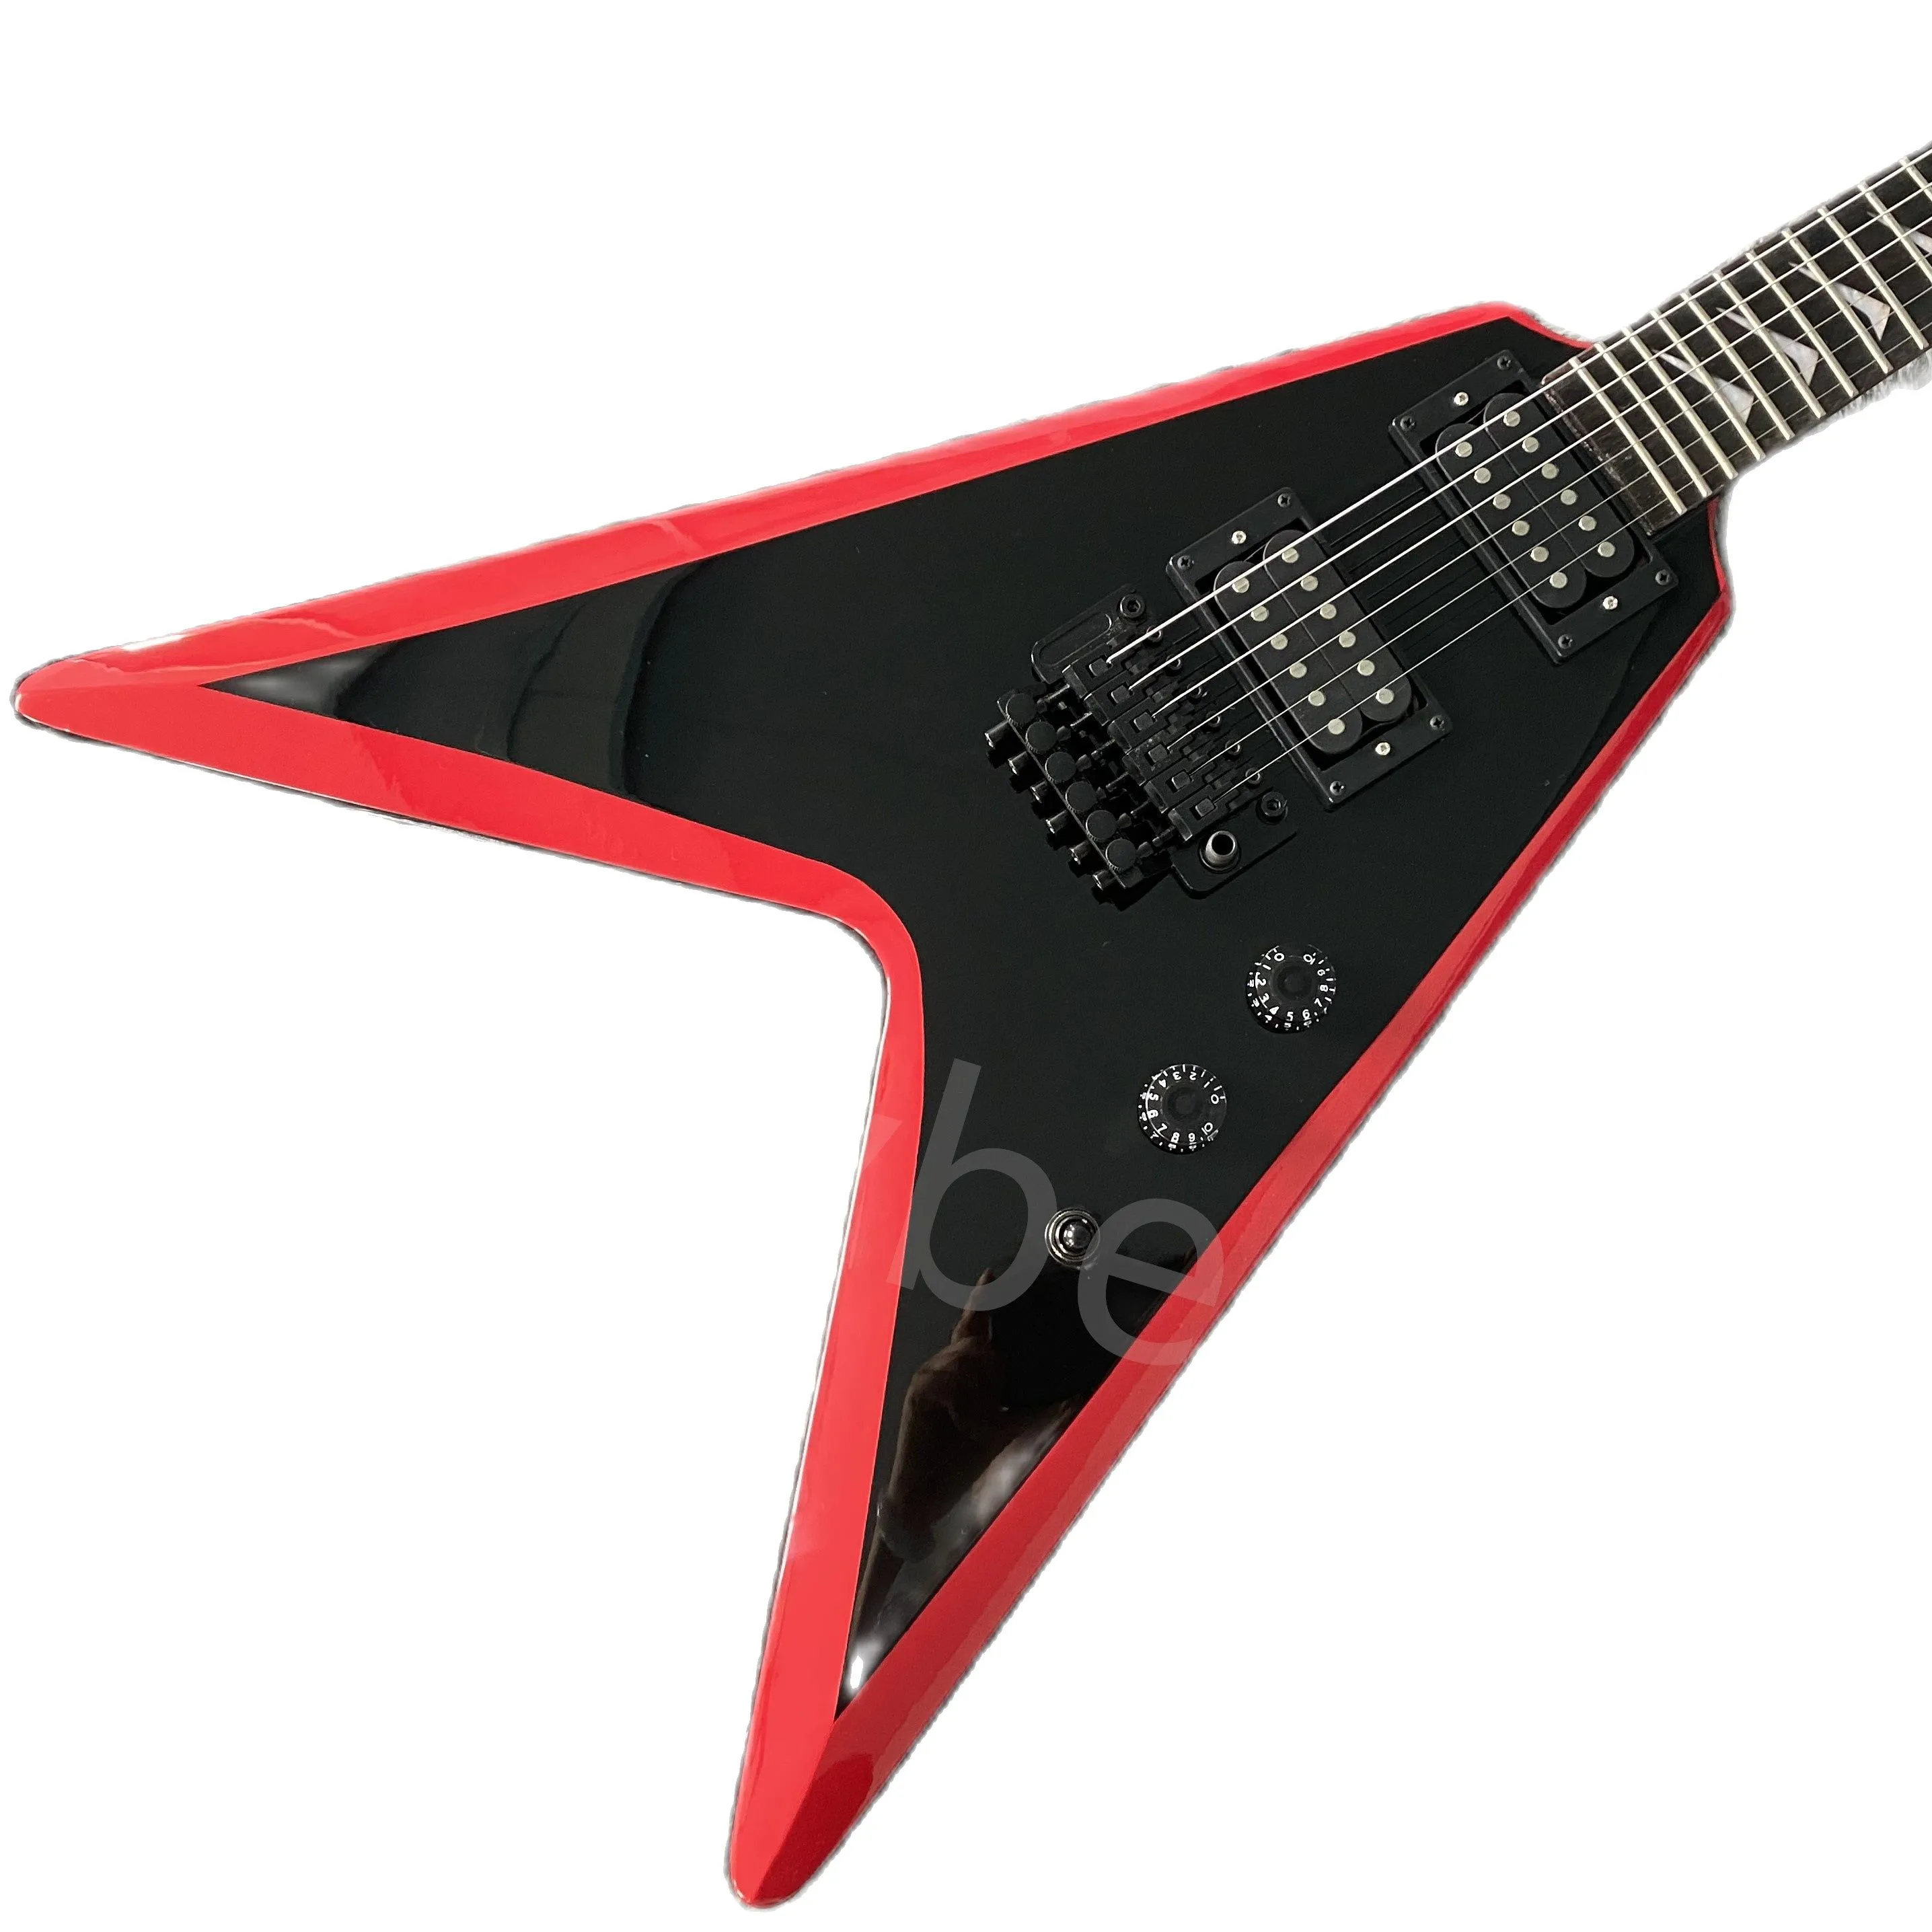 Lvybest China Electry Guitar Makale Siyah ve Kırmızı Uçak şekli fabrika doğrudan satışları özelleştirilebilir